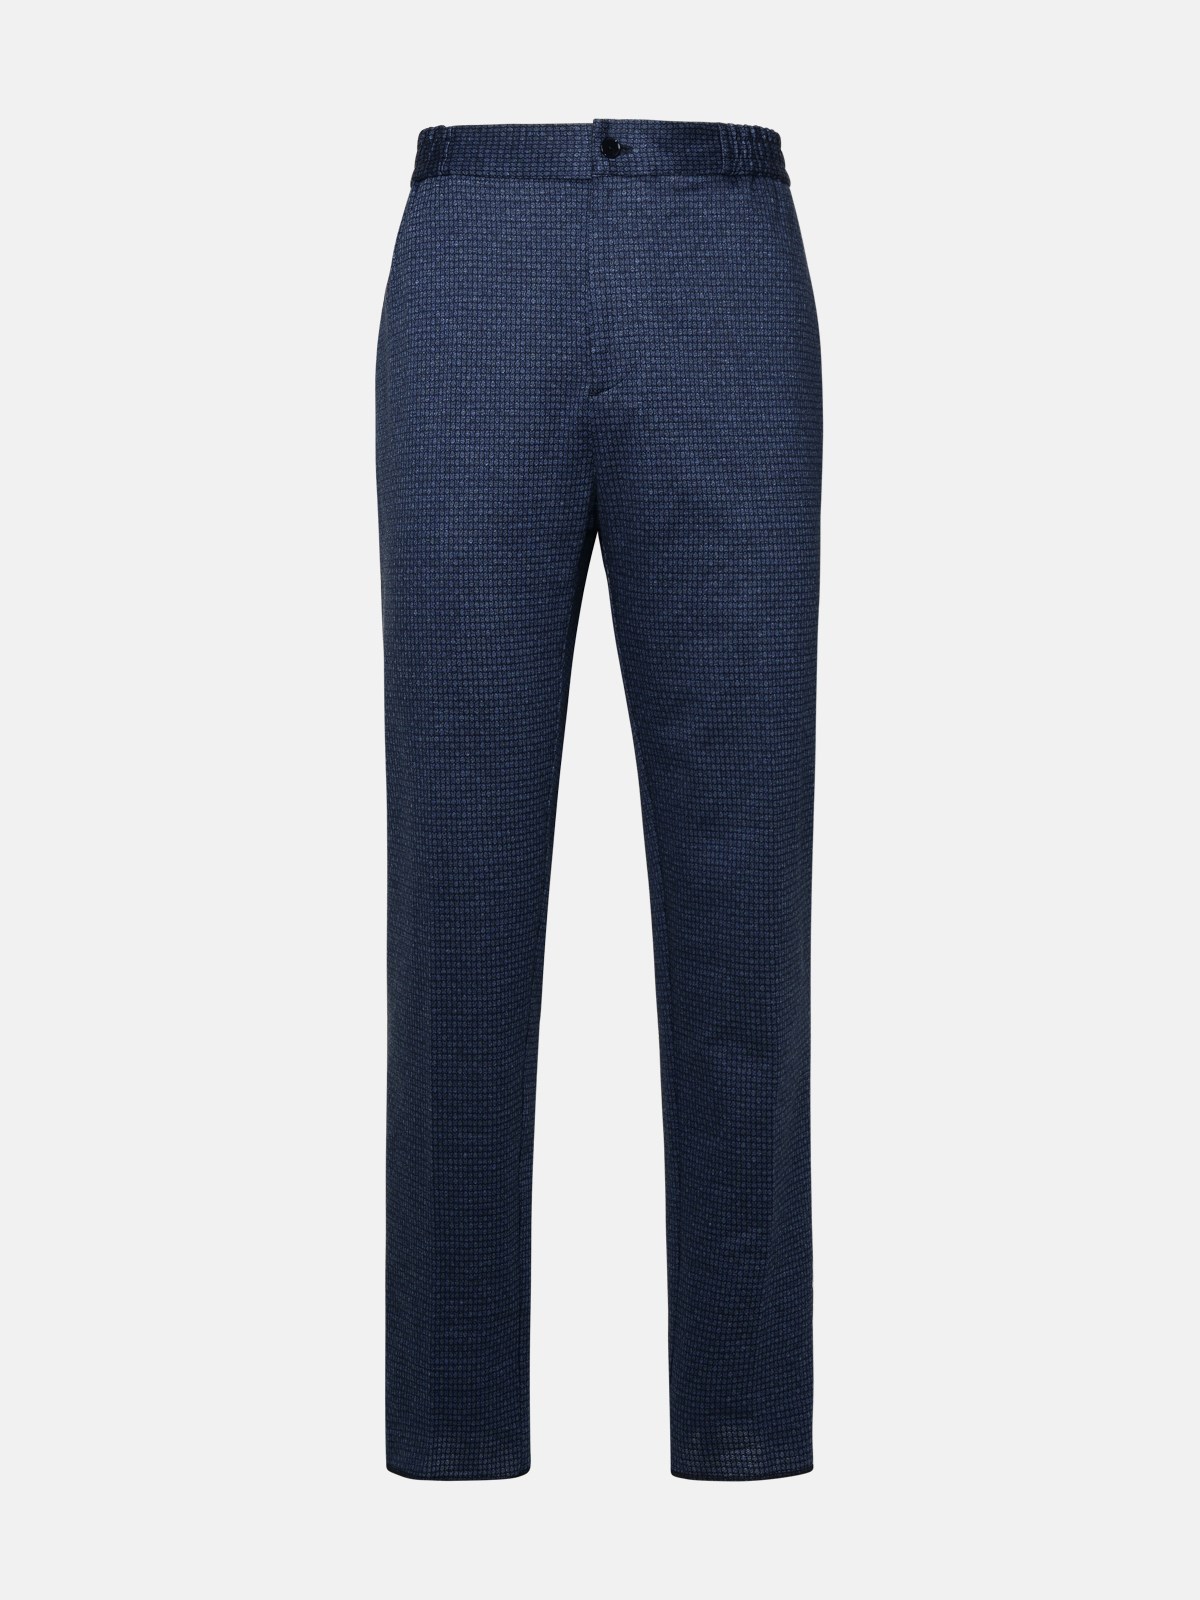 Etro Blue Cotton Pants